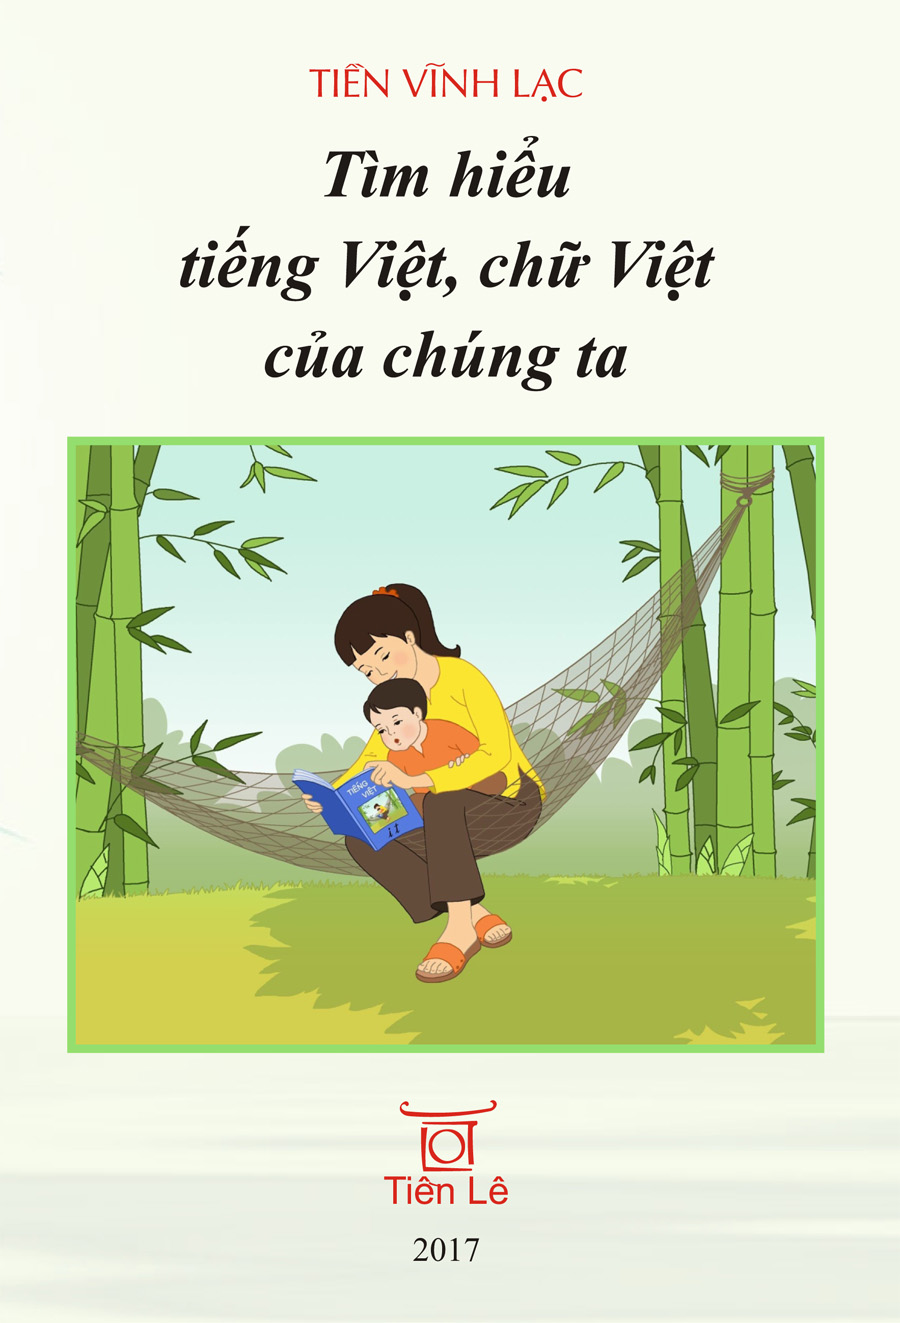 Tim Hieu Tieng Viet_Tien Vinh Lac